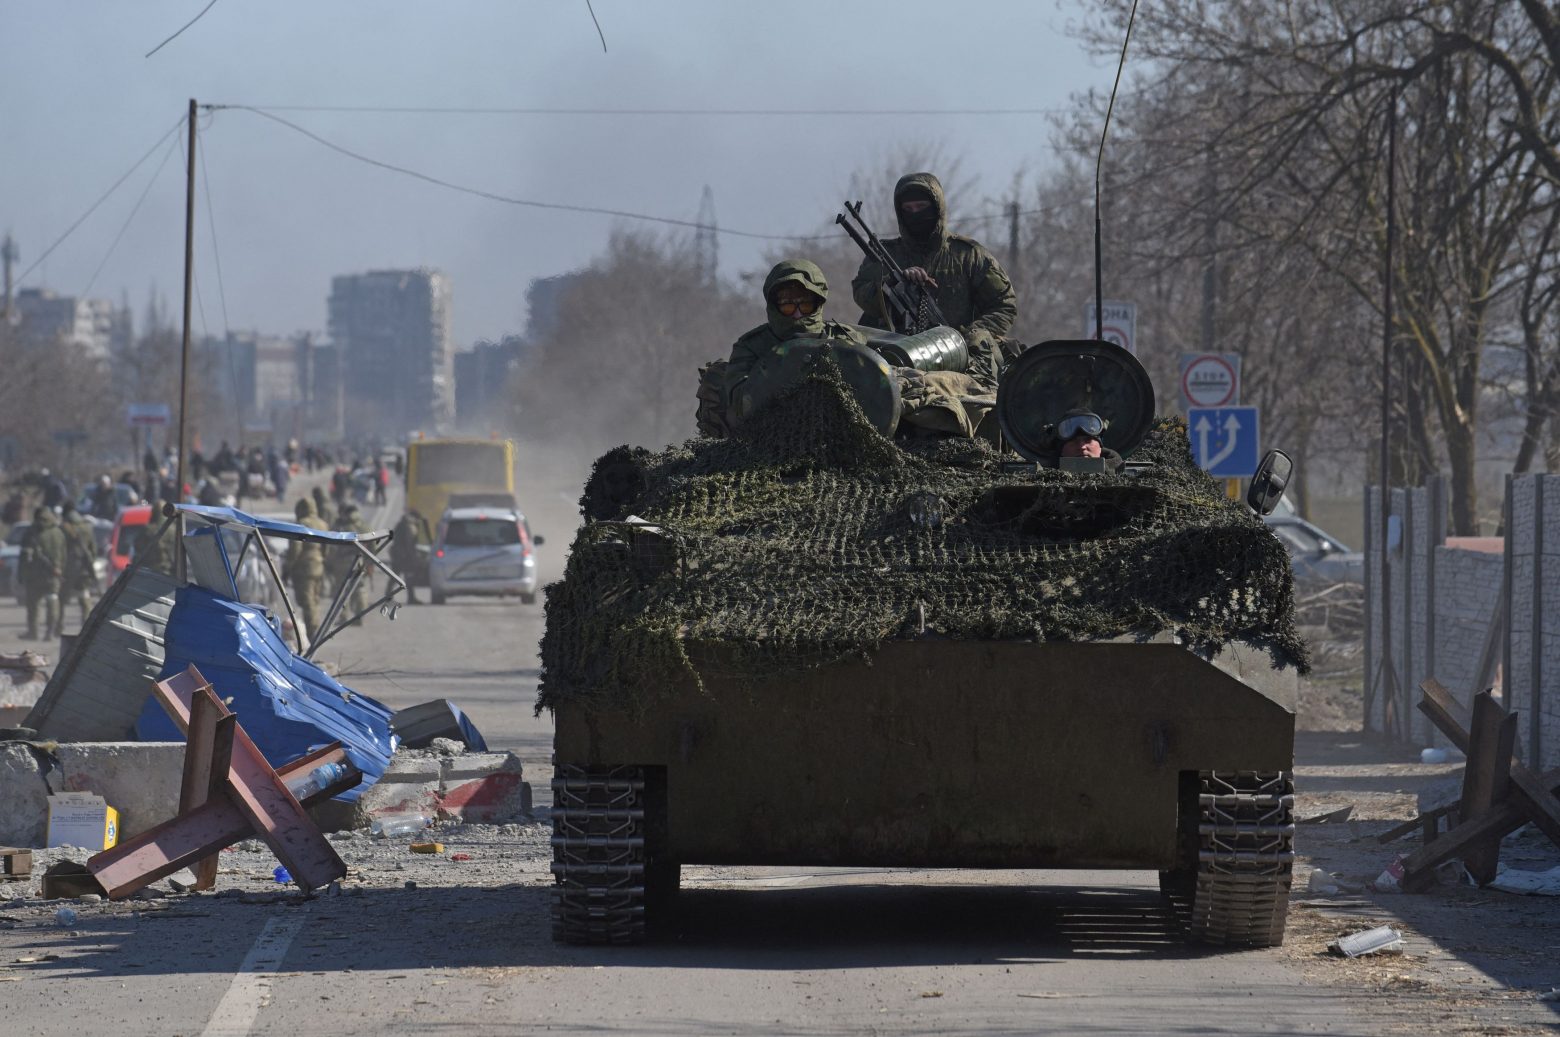 Πόλεμος στην Ουκρανία: Η Μαριούπολη είπε «όχι» στο ρωσικό τελεσίγραφο - «Κόλαση επί γης» στη μαρτυρική πόλη